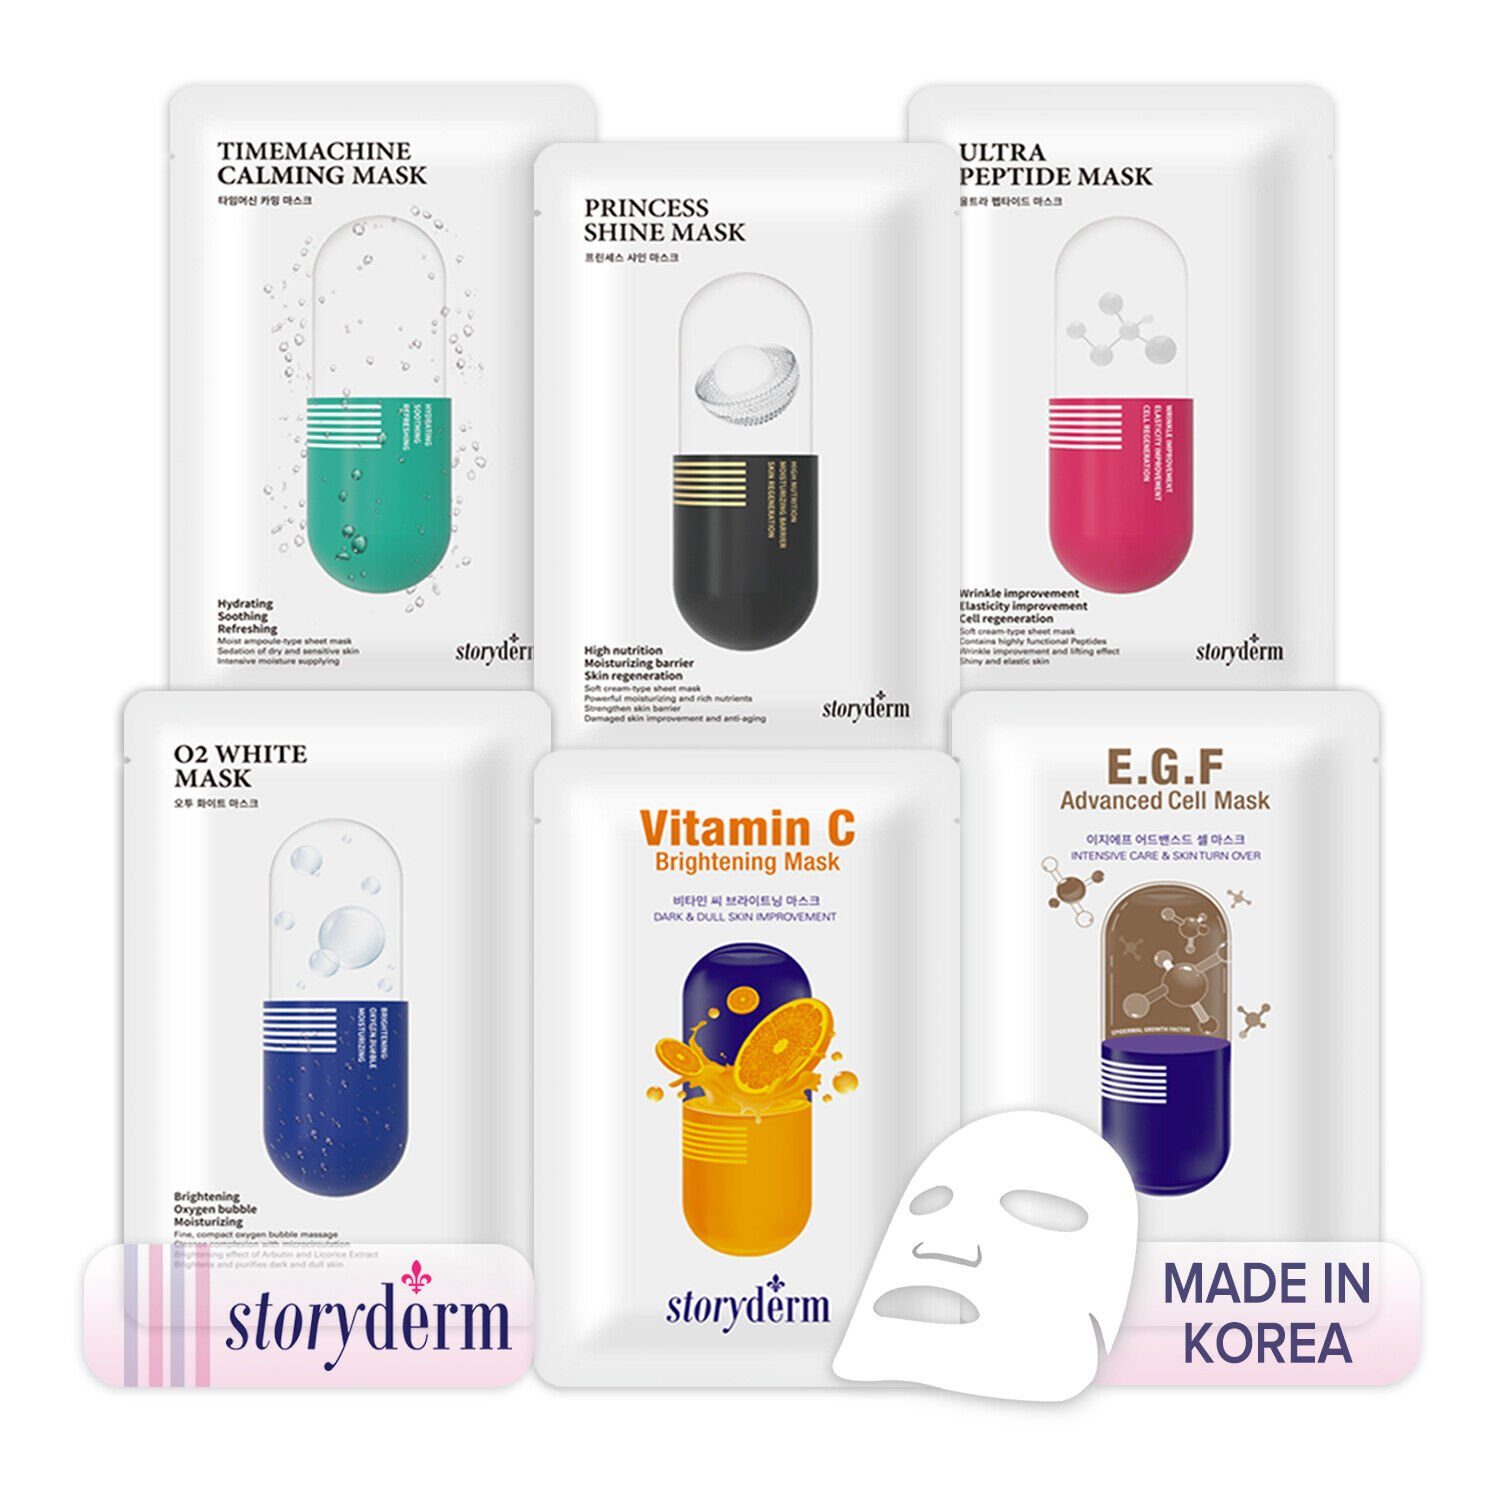 Storyderm Gesichtsmaske NEUHEIT aus Pflege Storyderm Korea ultra 1-tlg. Tuchmaske Gesichtsmaske Premium peptide